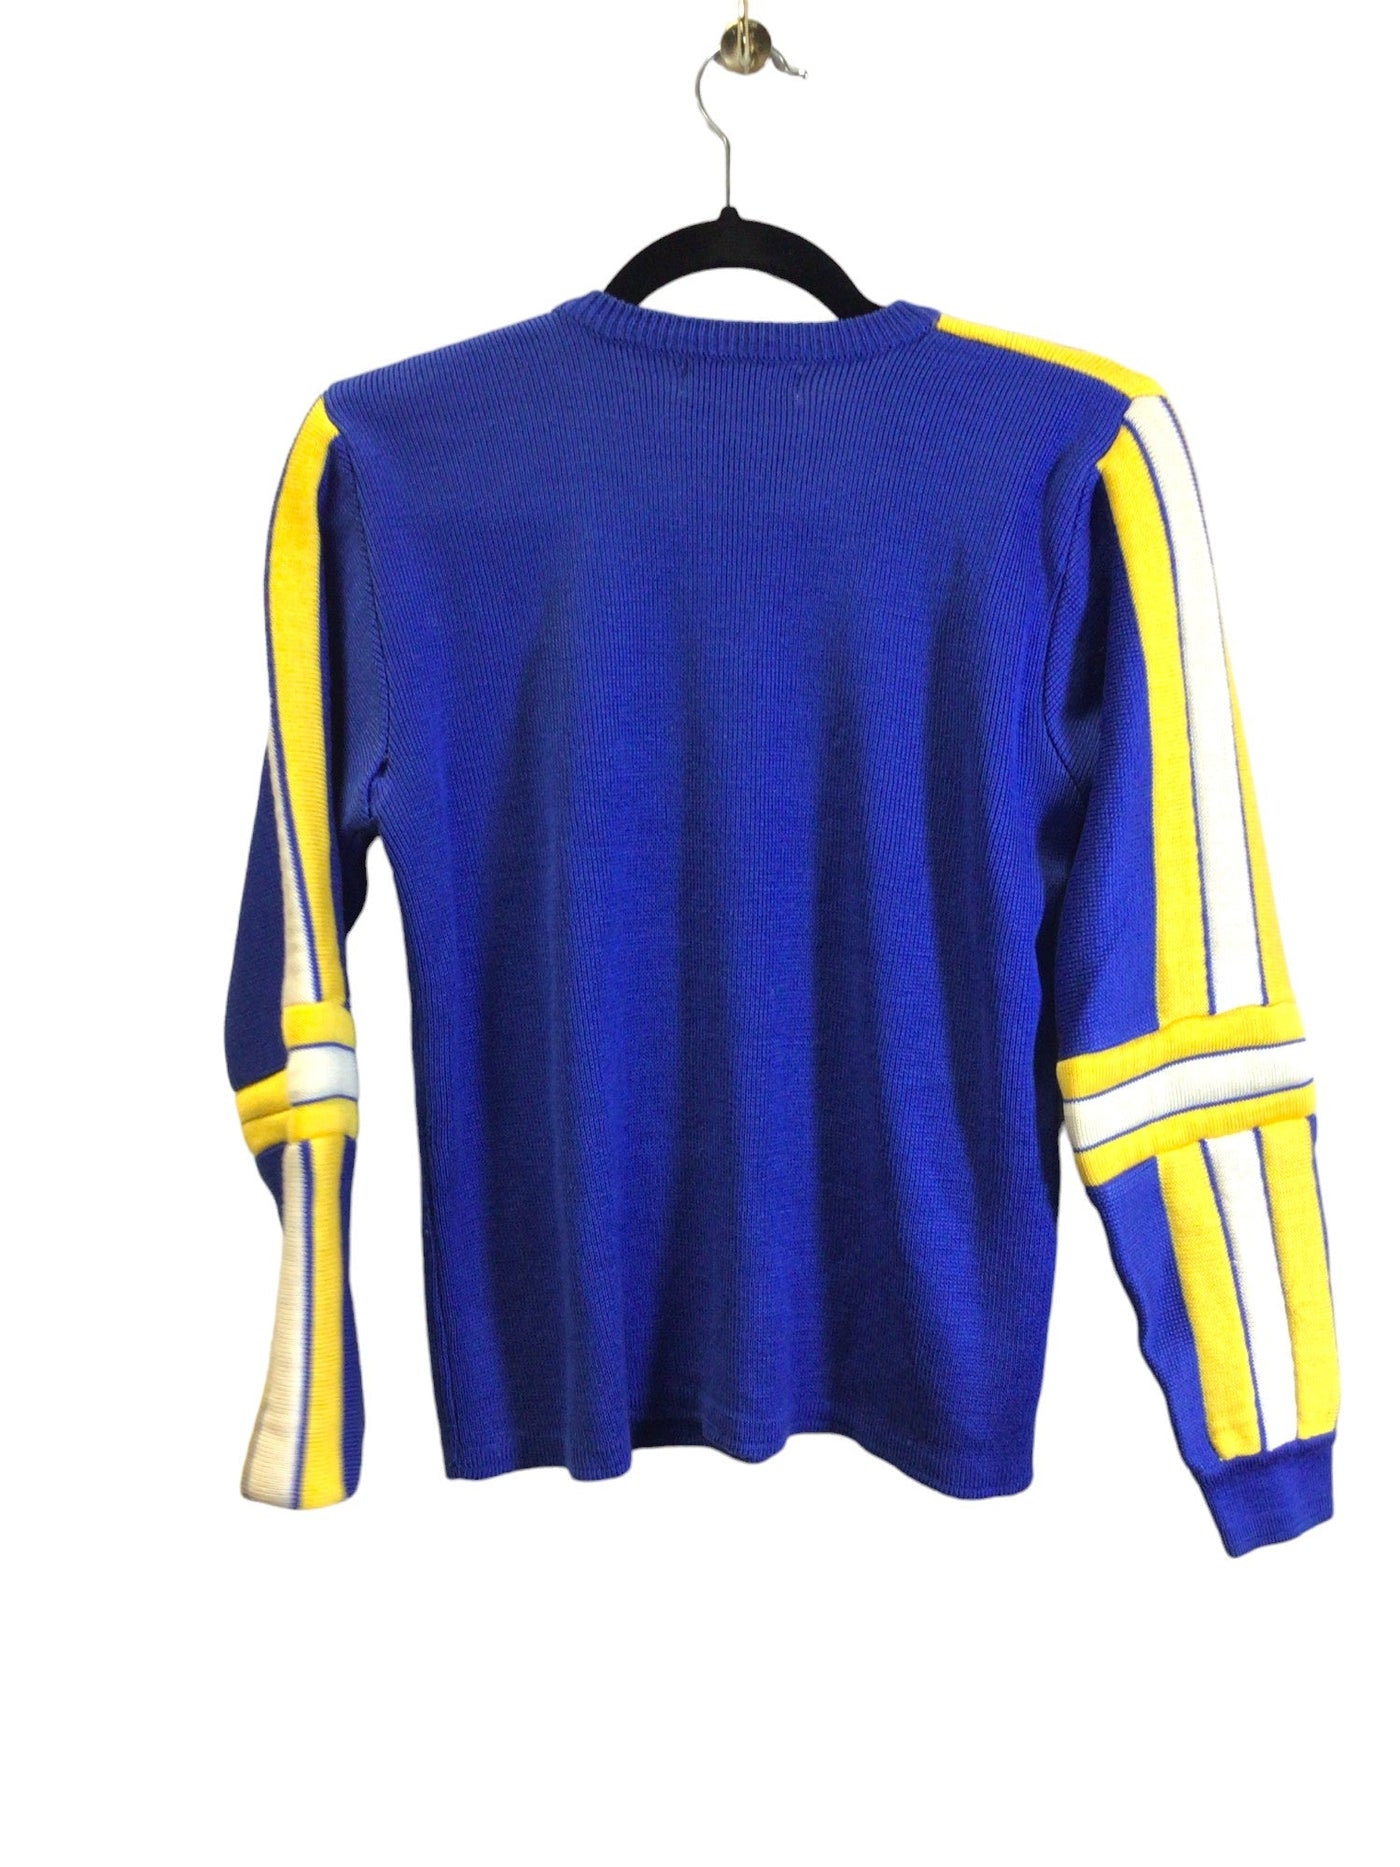 FILA Women Sweaters Regular fit in Blue - Size M | 14.3 $ KOOP